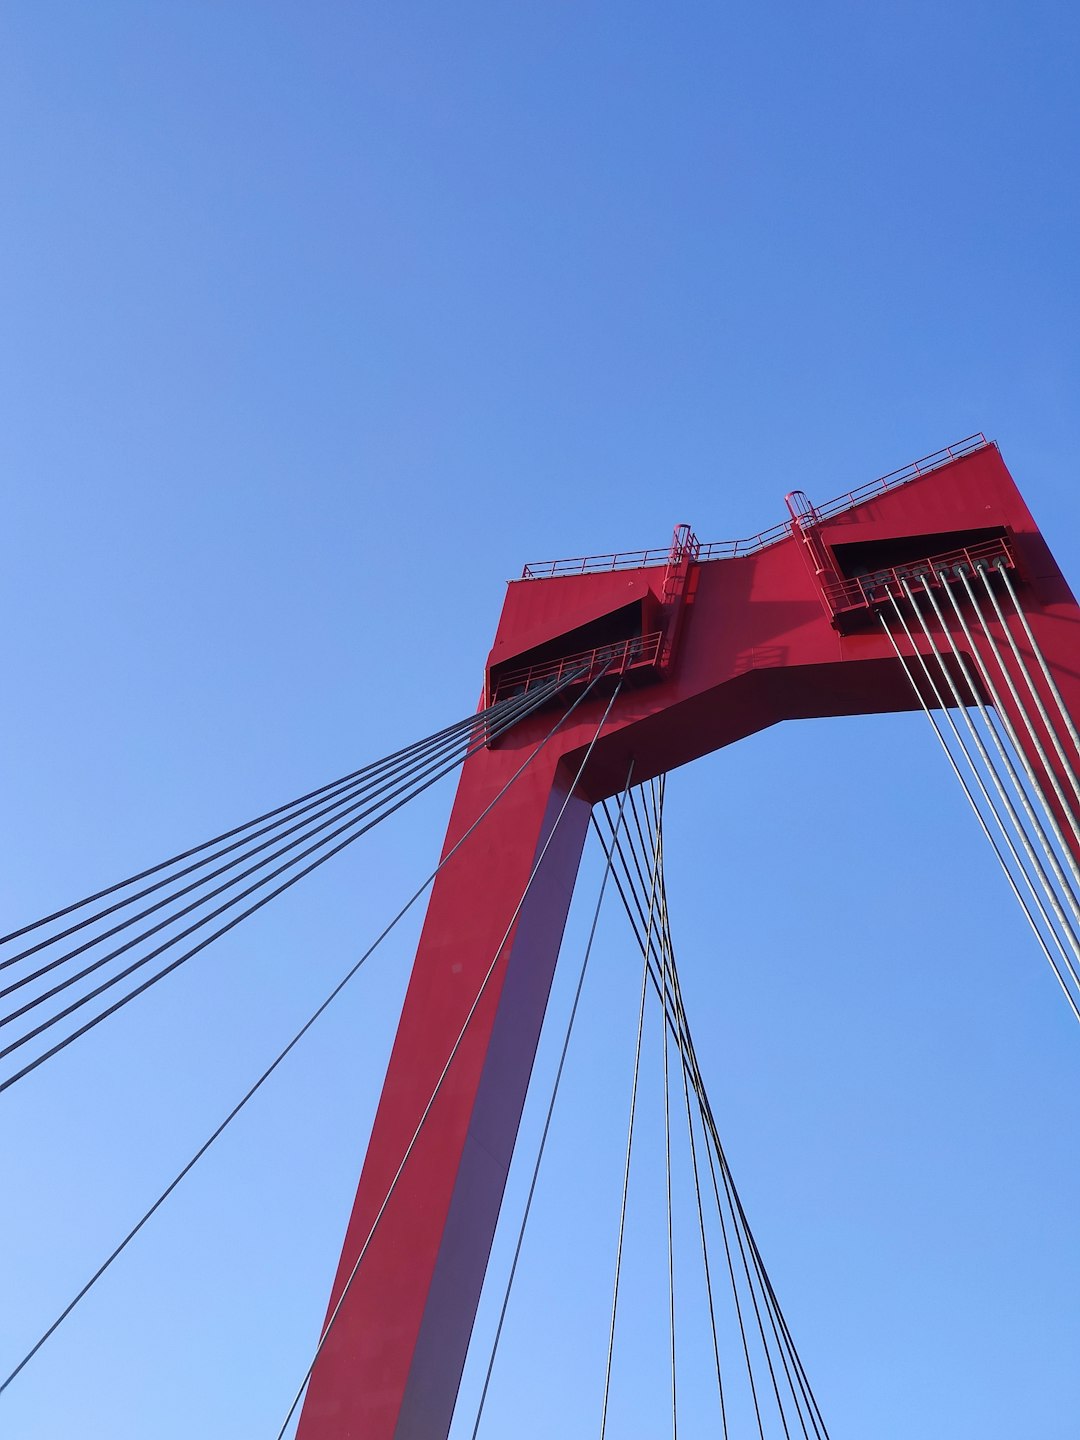 Suspension bridge photo spot Willemsbrug Erasmusbrug